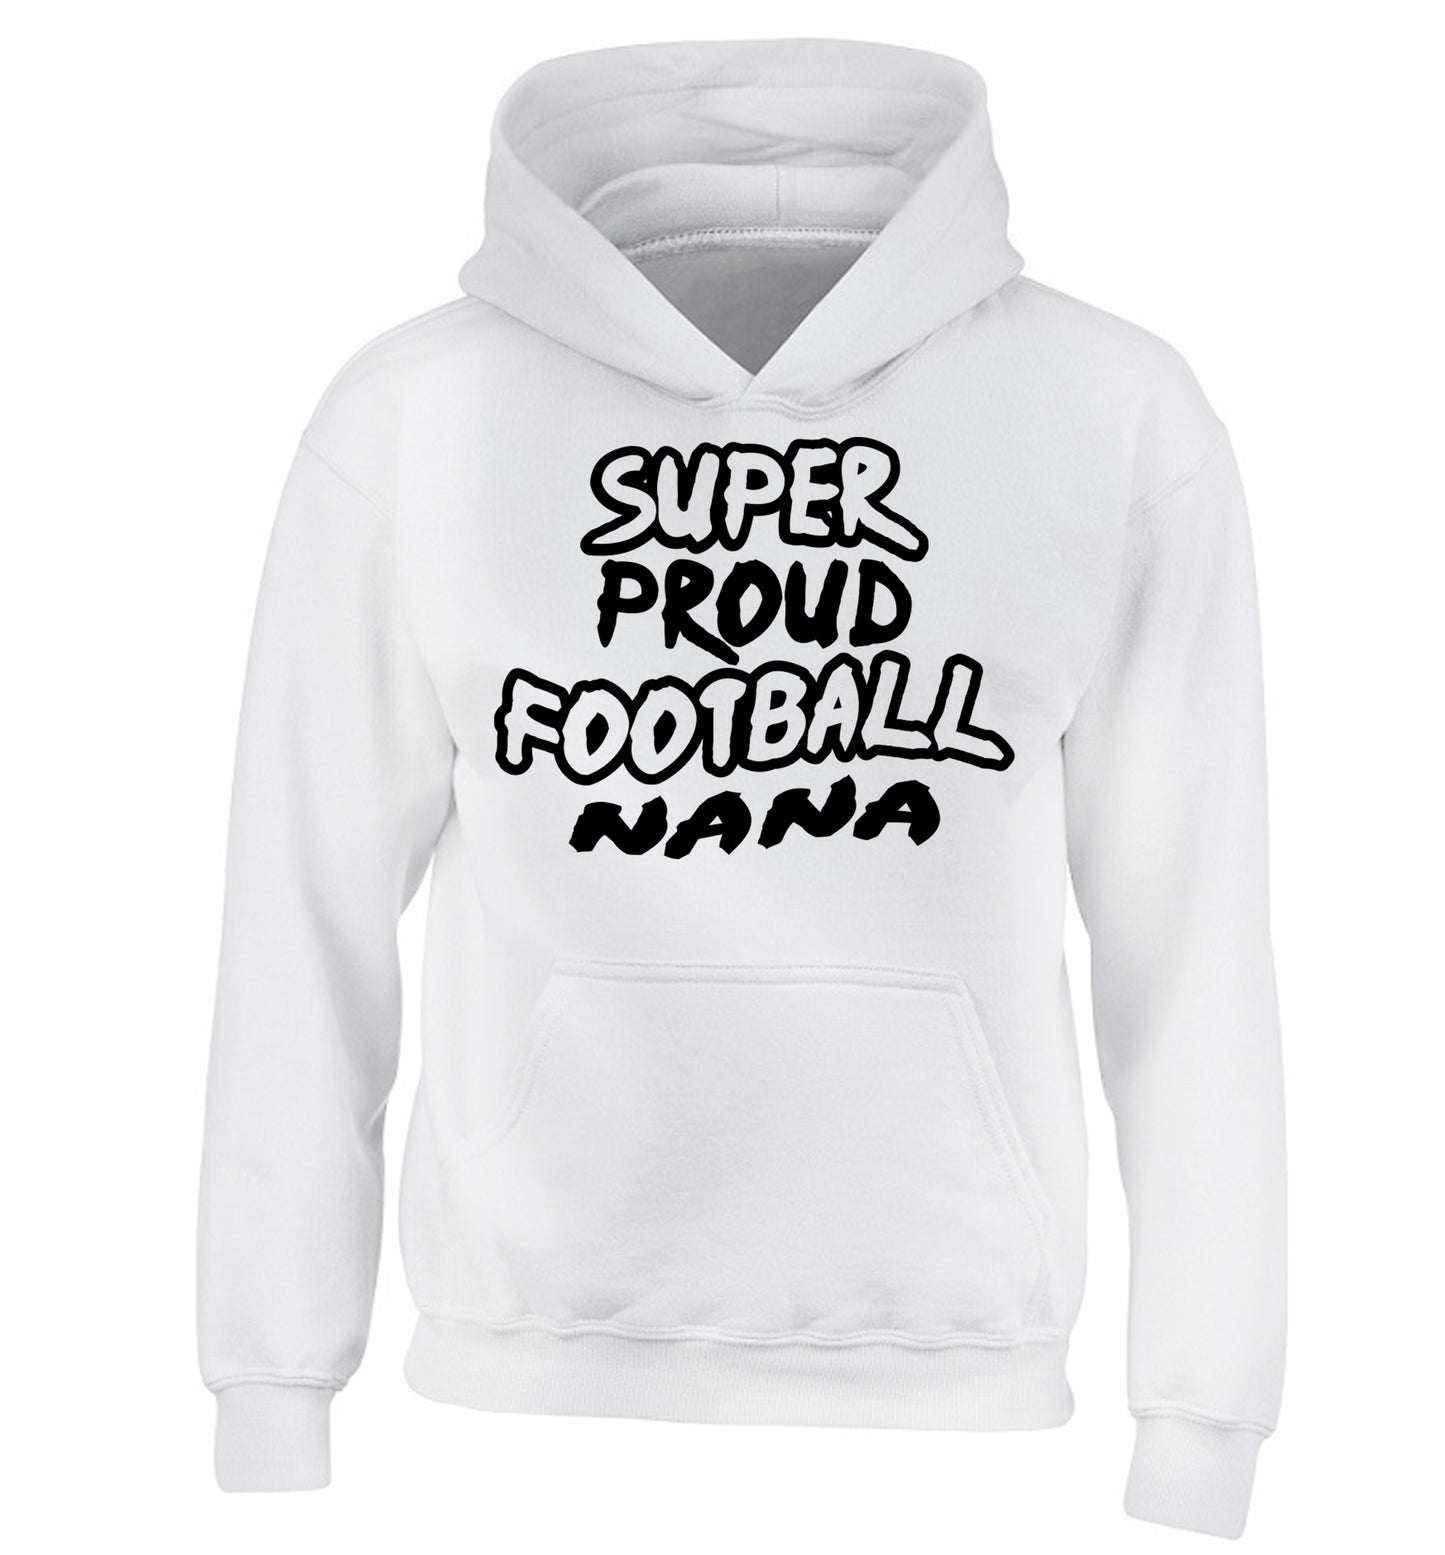 Super proud football nana children's white hoodie 12-14 Years